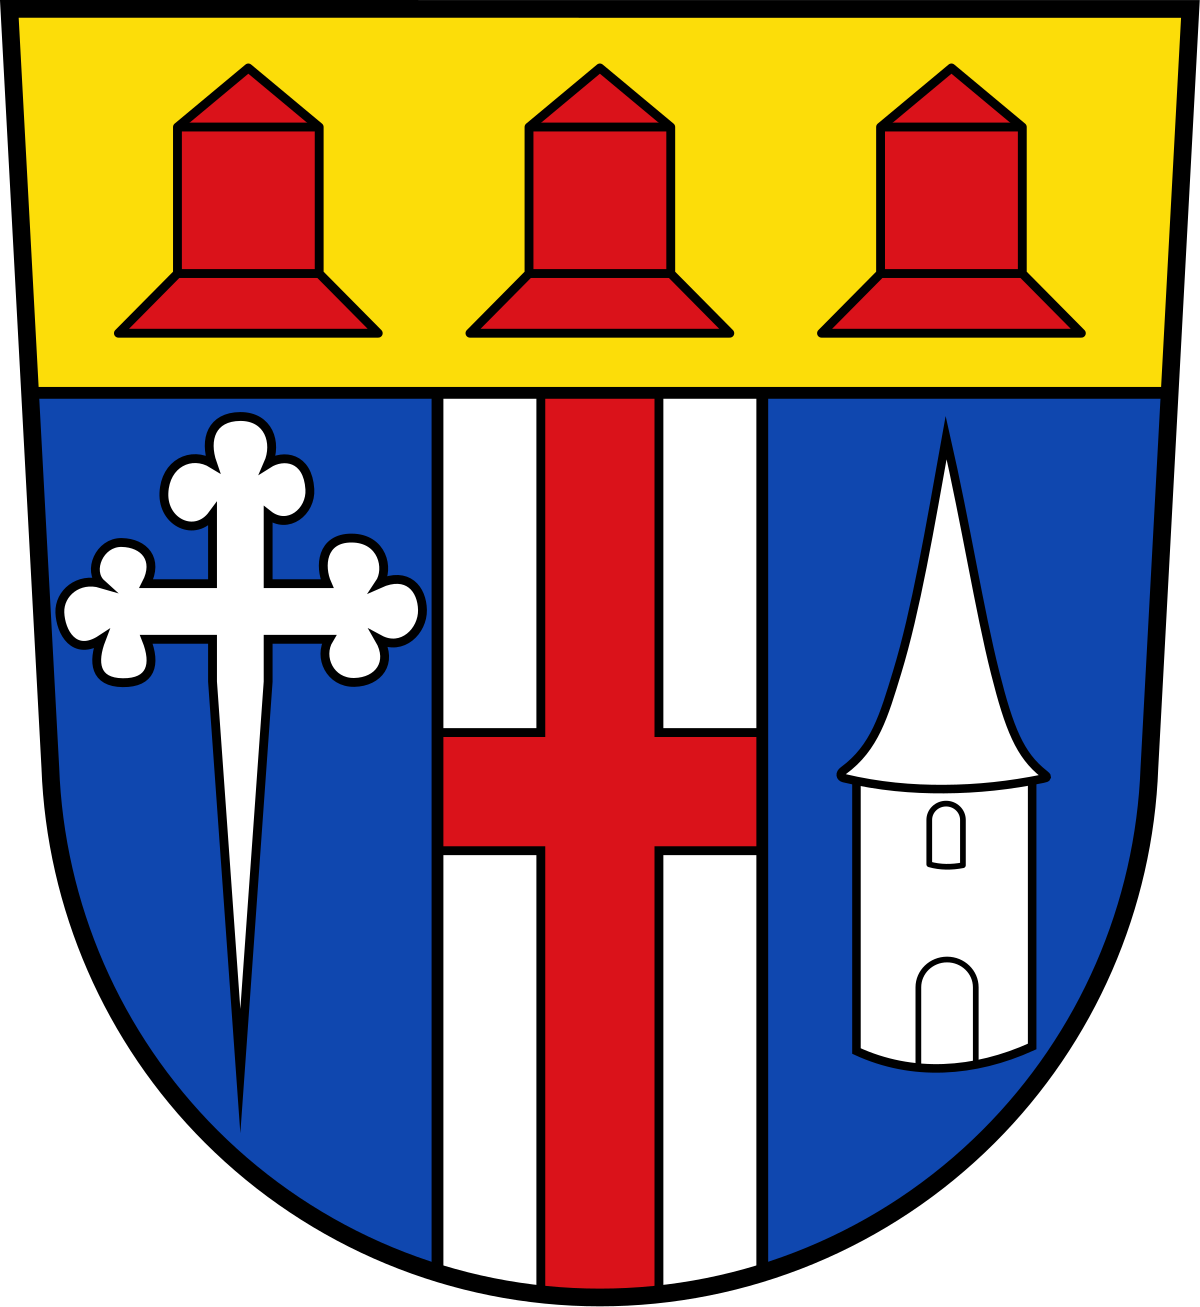 Bebelsheim